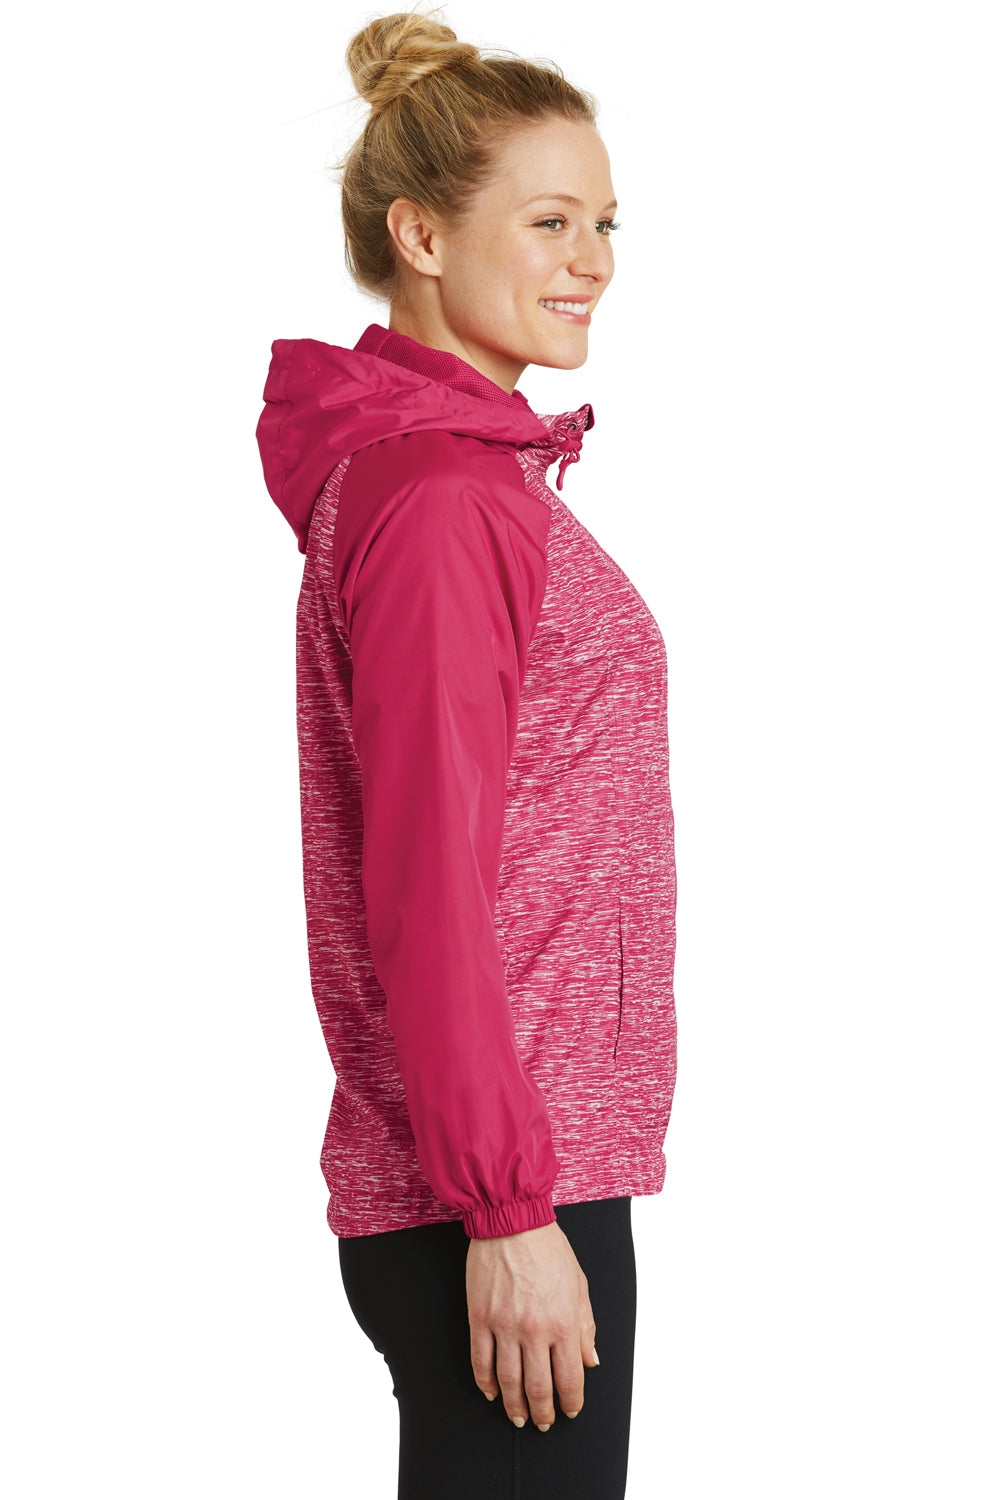 Sport-Tek LST40 Womens Wind & Water Resistant Full Zip Hooded Jacket Fuchsia Pink Side